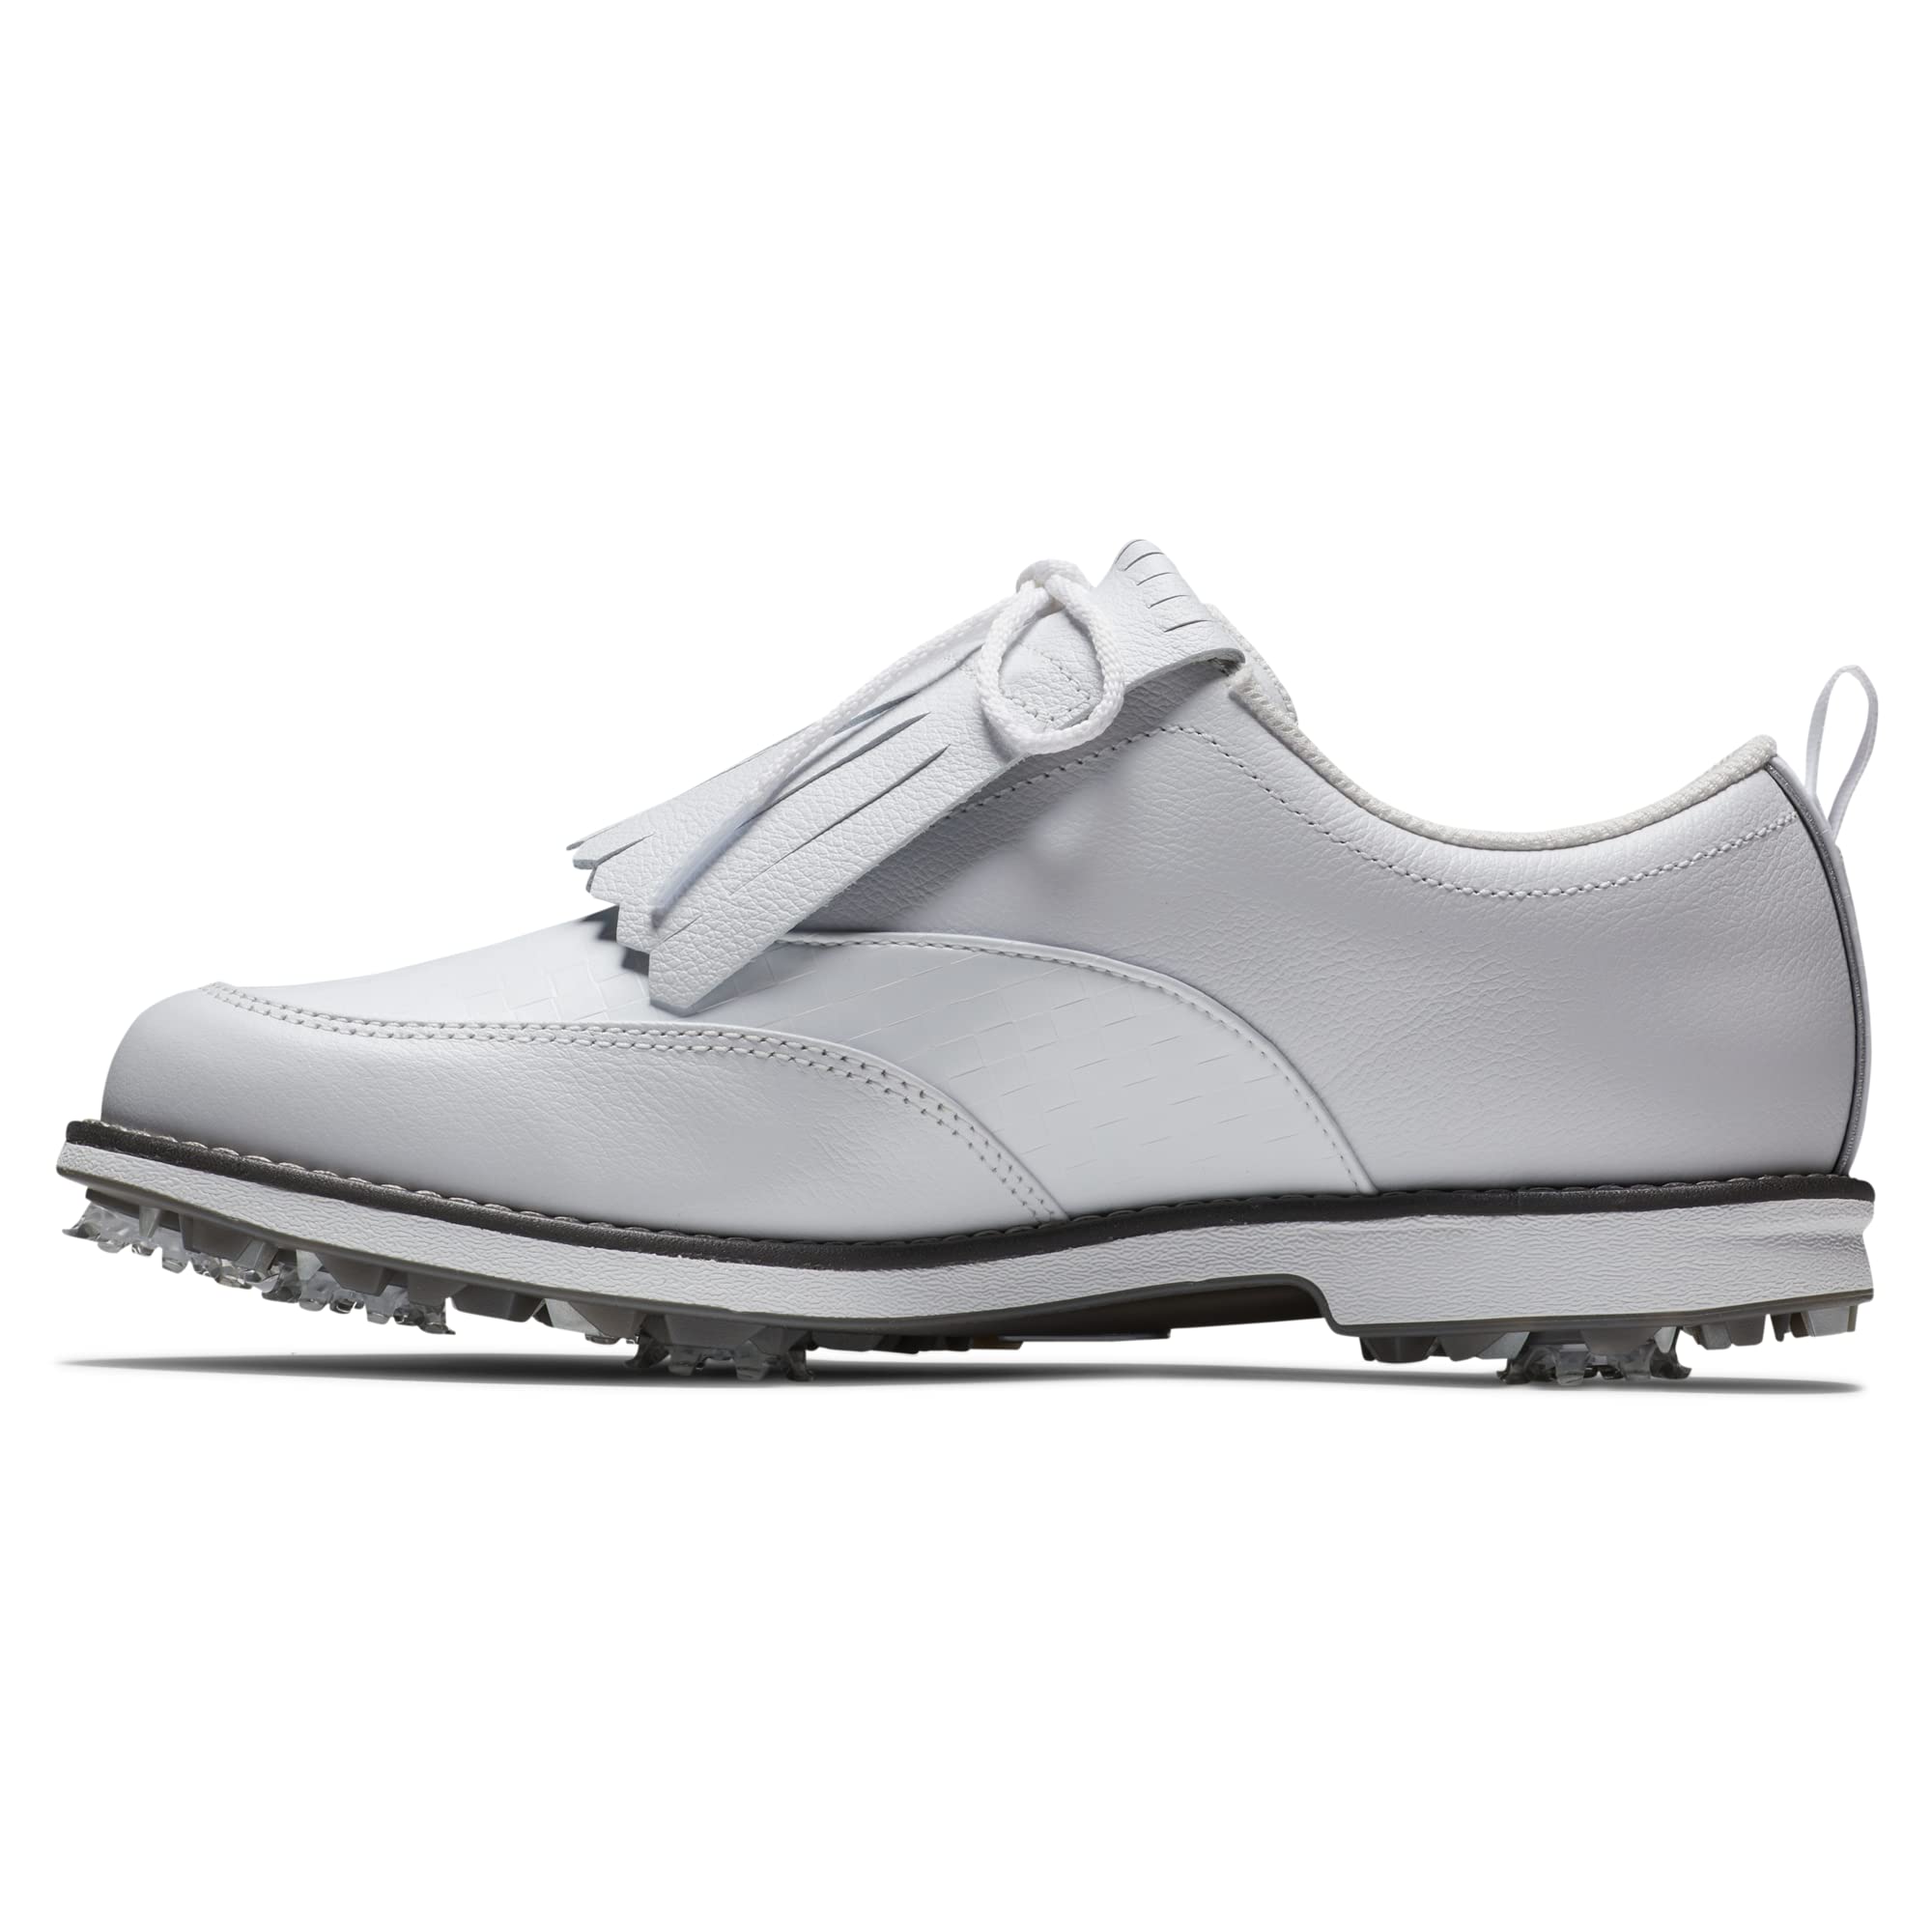 FootJoy Women's Premiere Series-Issette Golf Shoe, White/White, 9.5 Wide